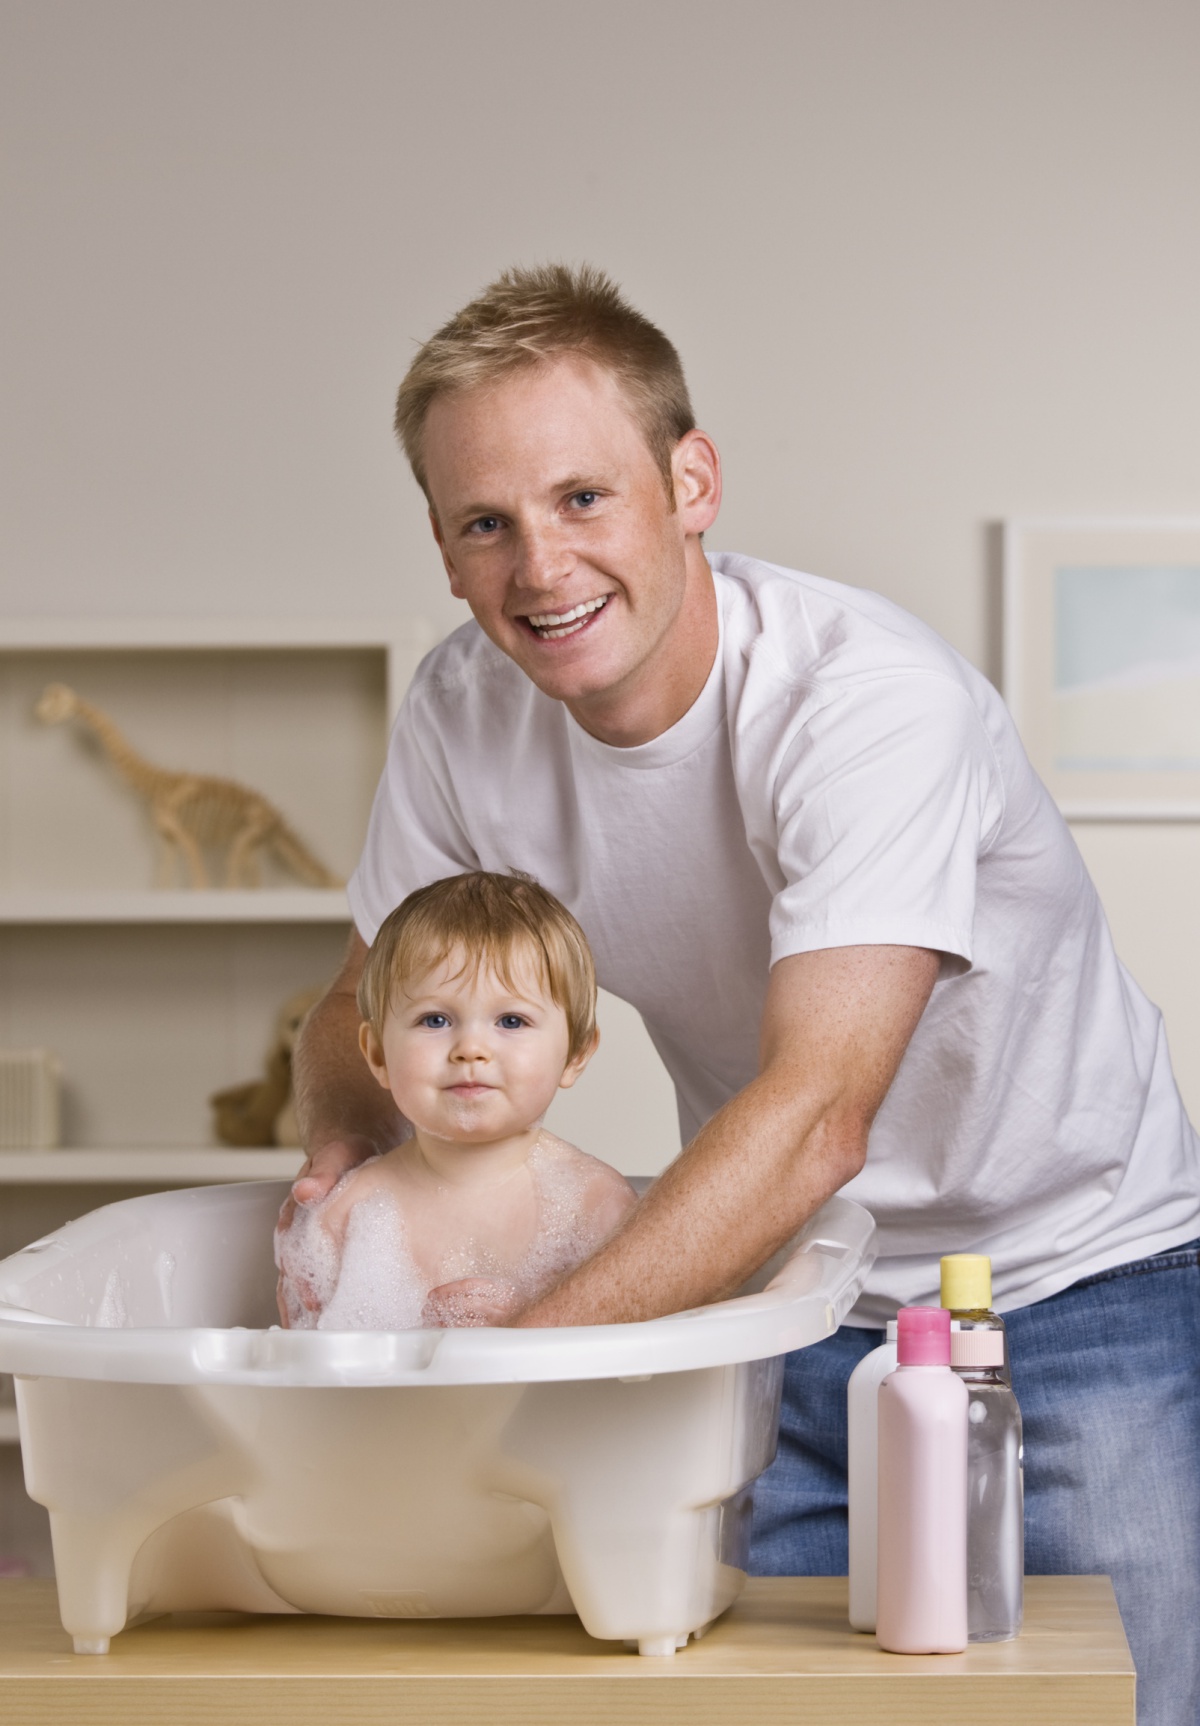 Daughter bath. Отец купает ребенка. Дети в ванной с папой. Родители купают ребенка. Семья в ванной.